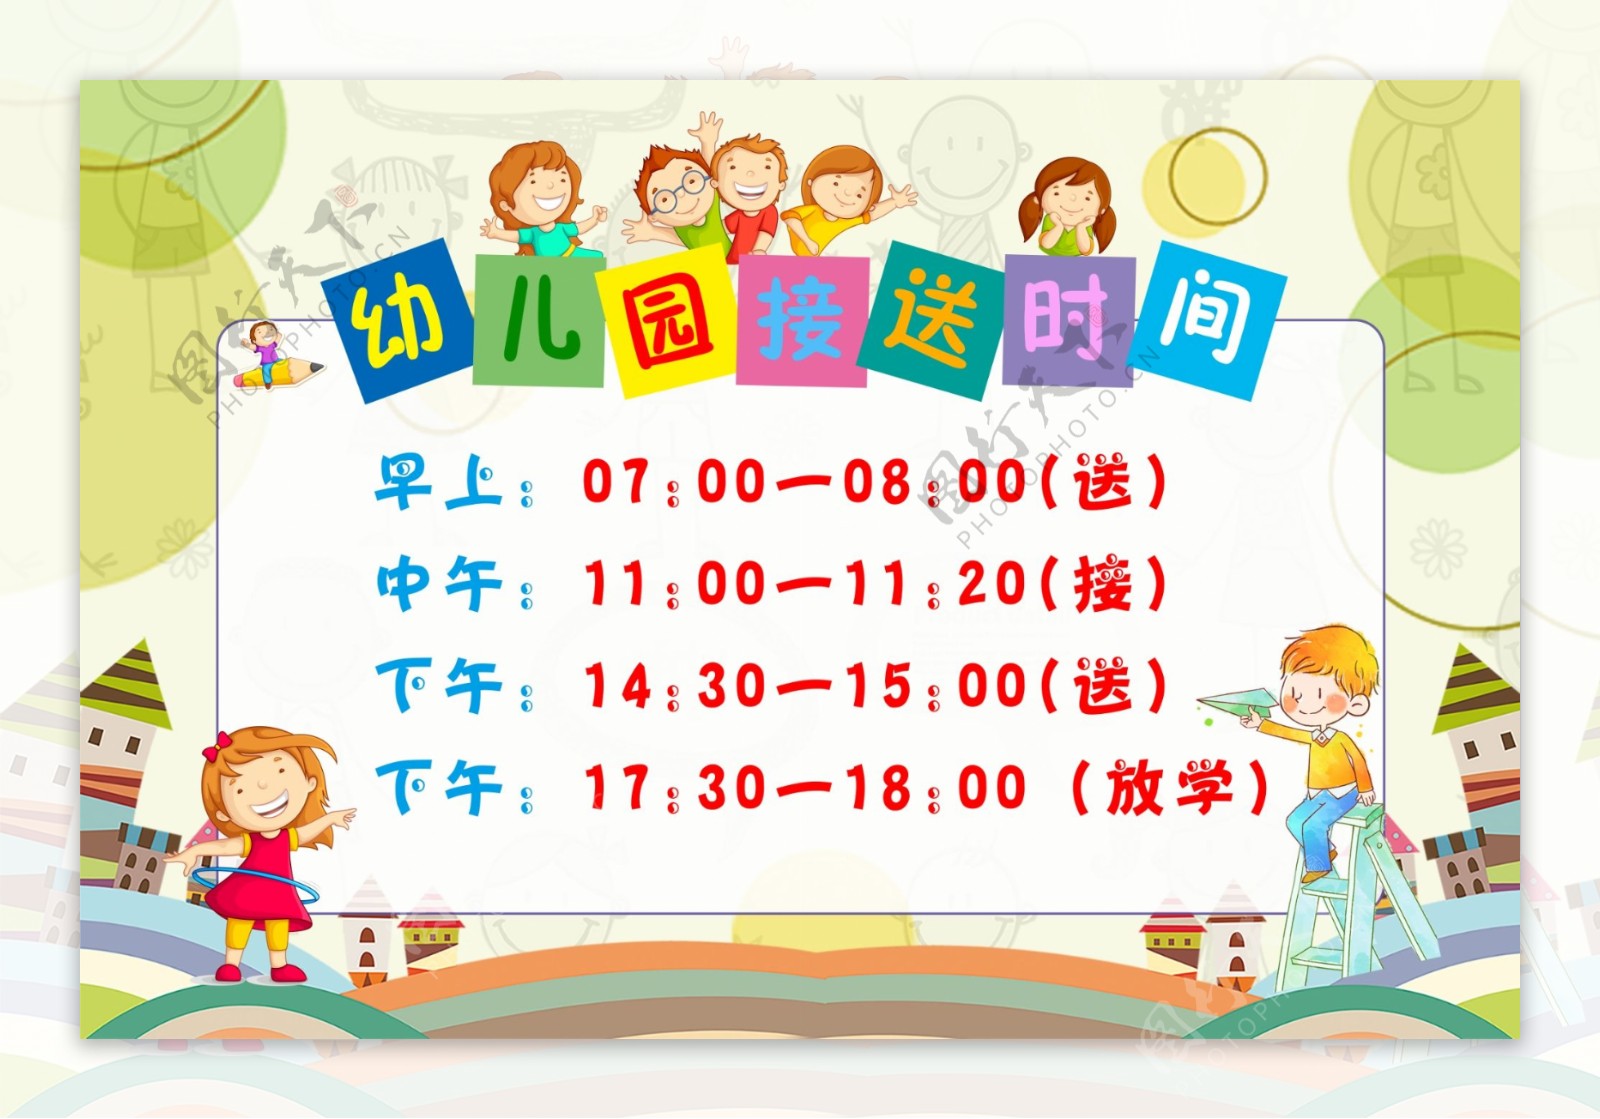 幼儿园接送时间表